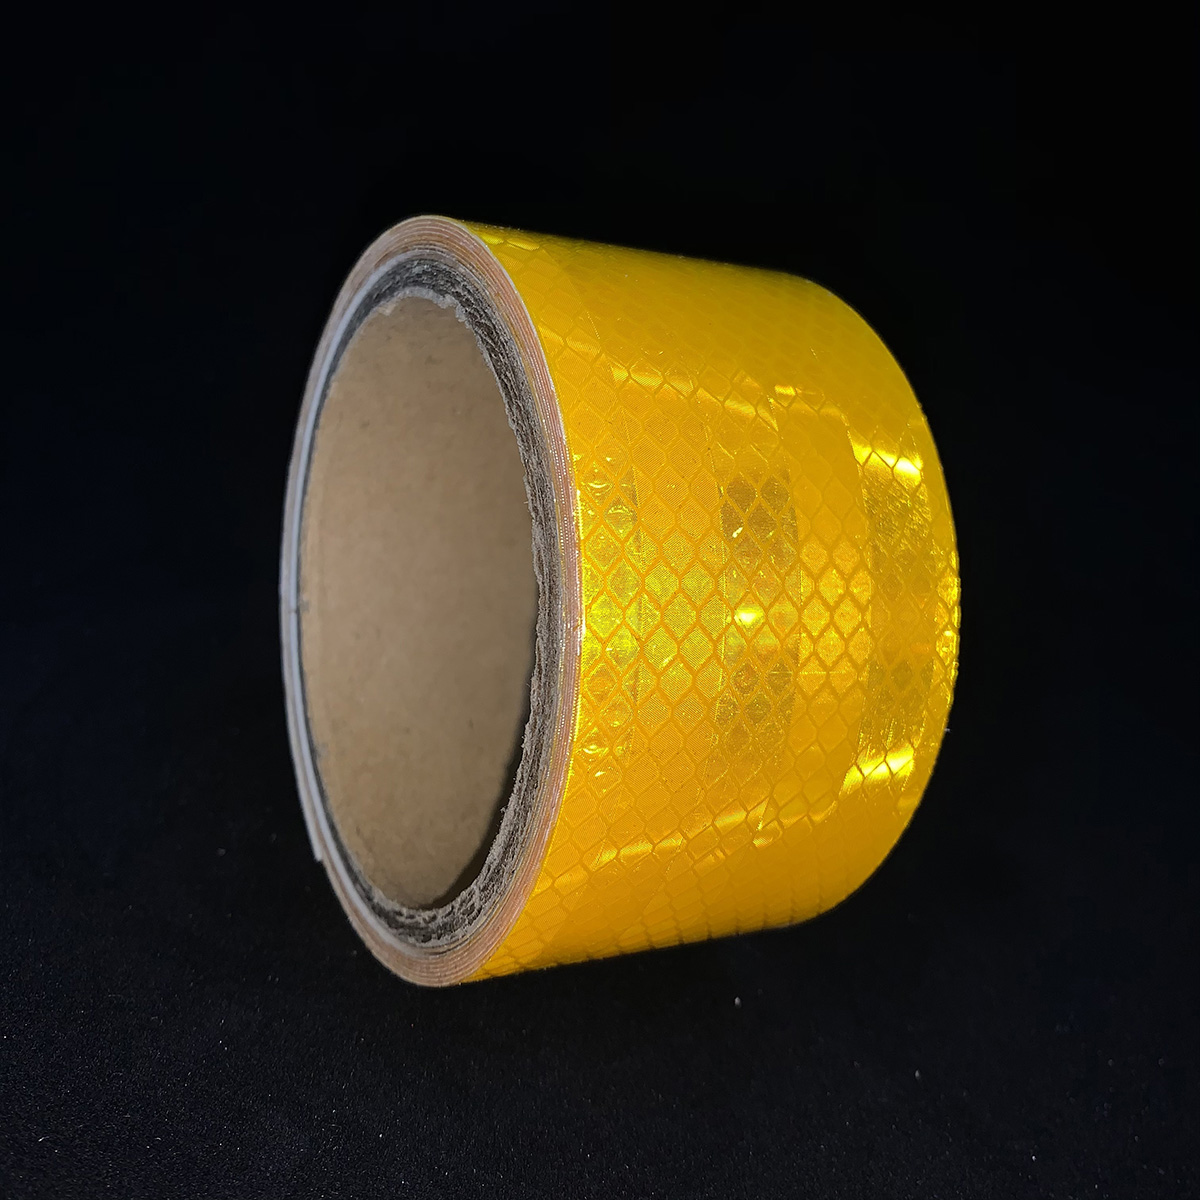 Cinta reflectante microprismática amarilla dorada de 5 cm * 5 m